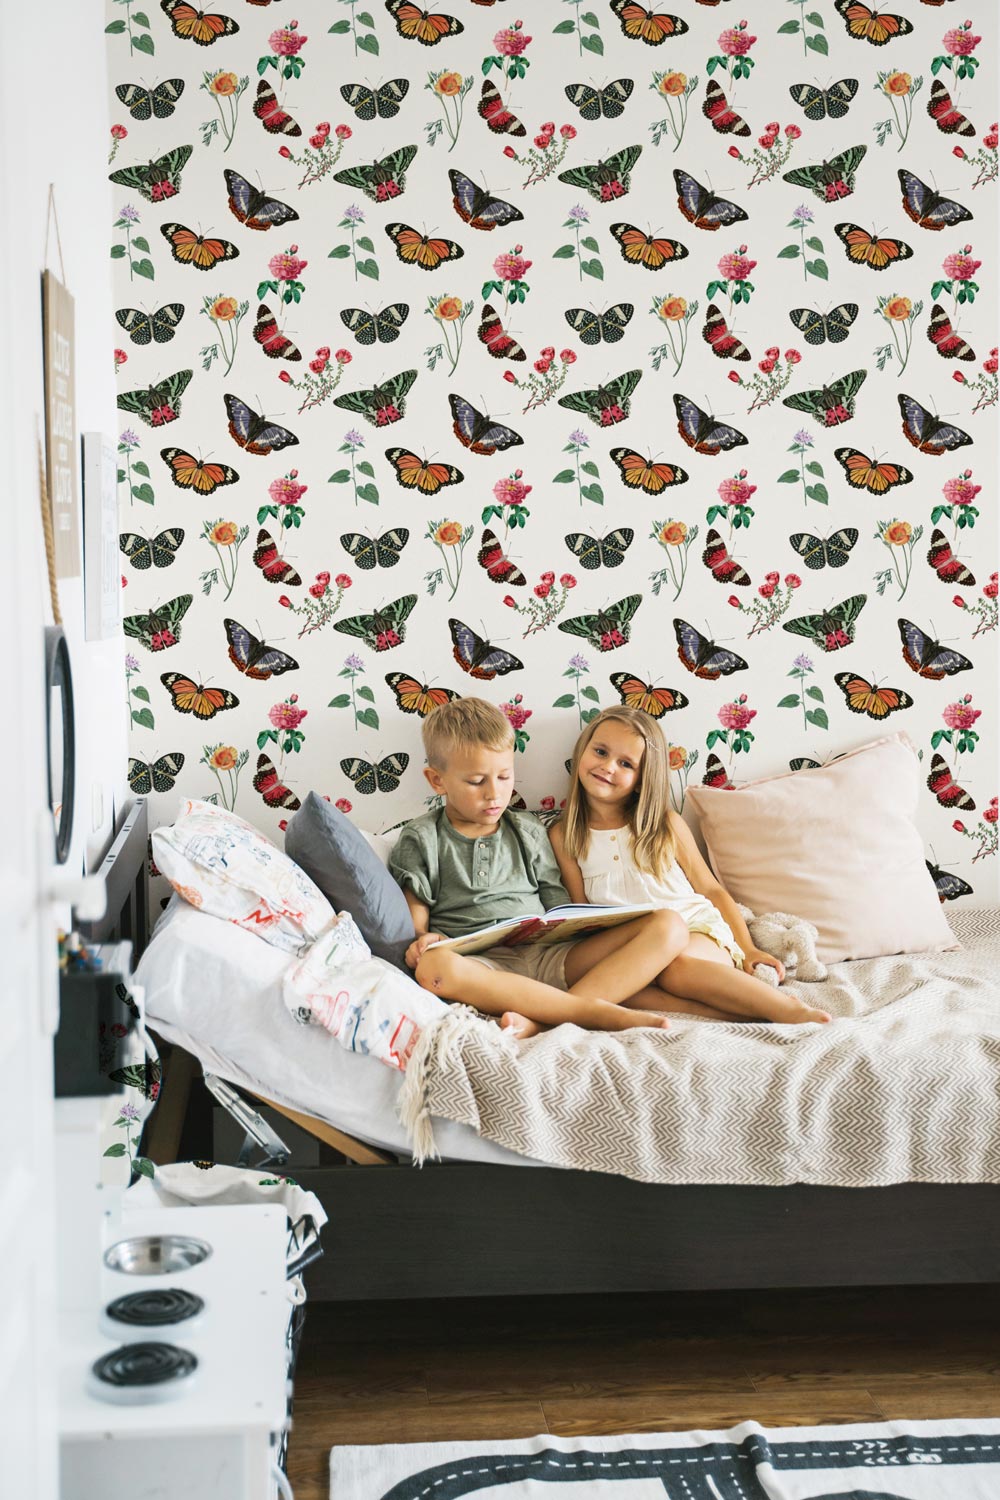 Butterfly Meadow Design Wallpaper In Kids Room